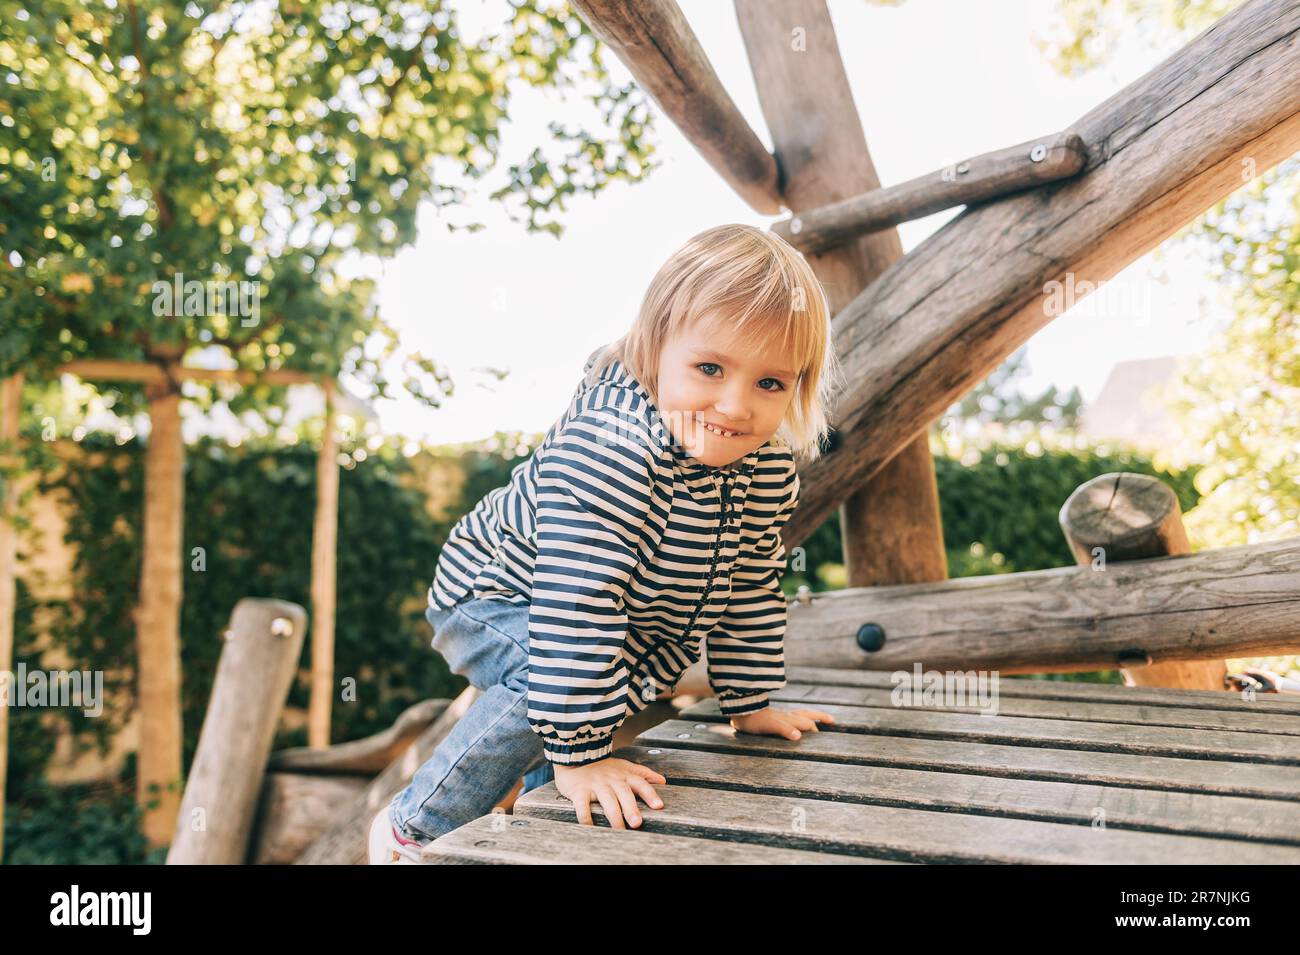 Portrait en plein air d'une fillette heureuse jouant sur le terrain de jeu, enfant actif s'amusant dans le parc pour enfants Banque D'Images